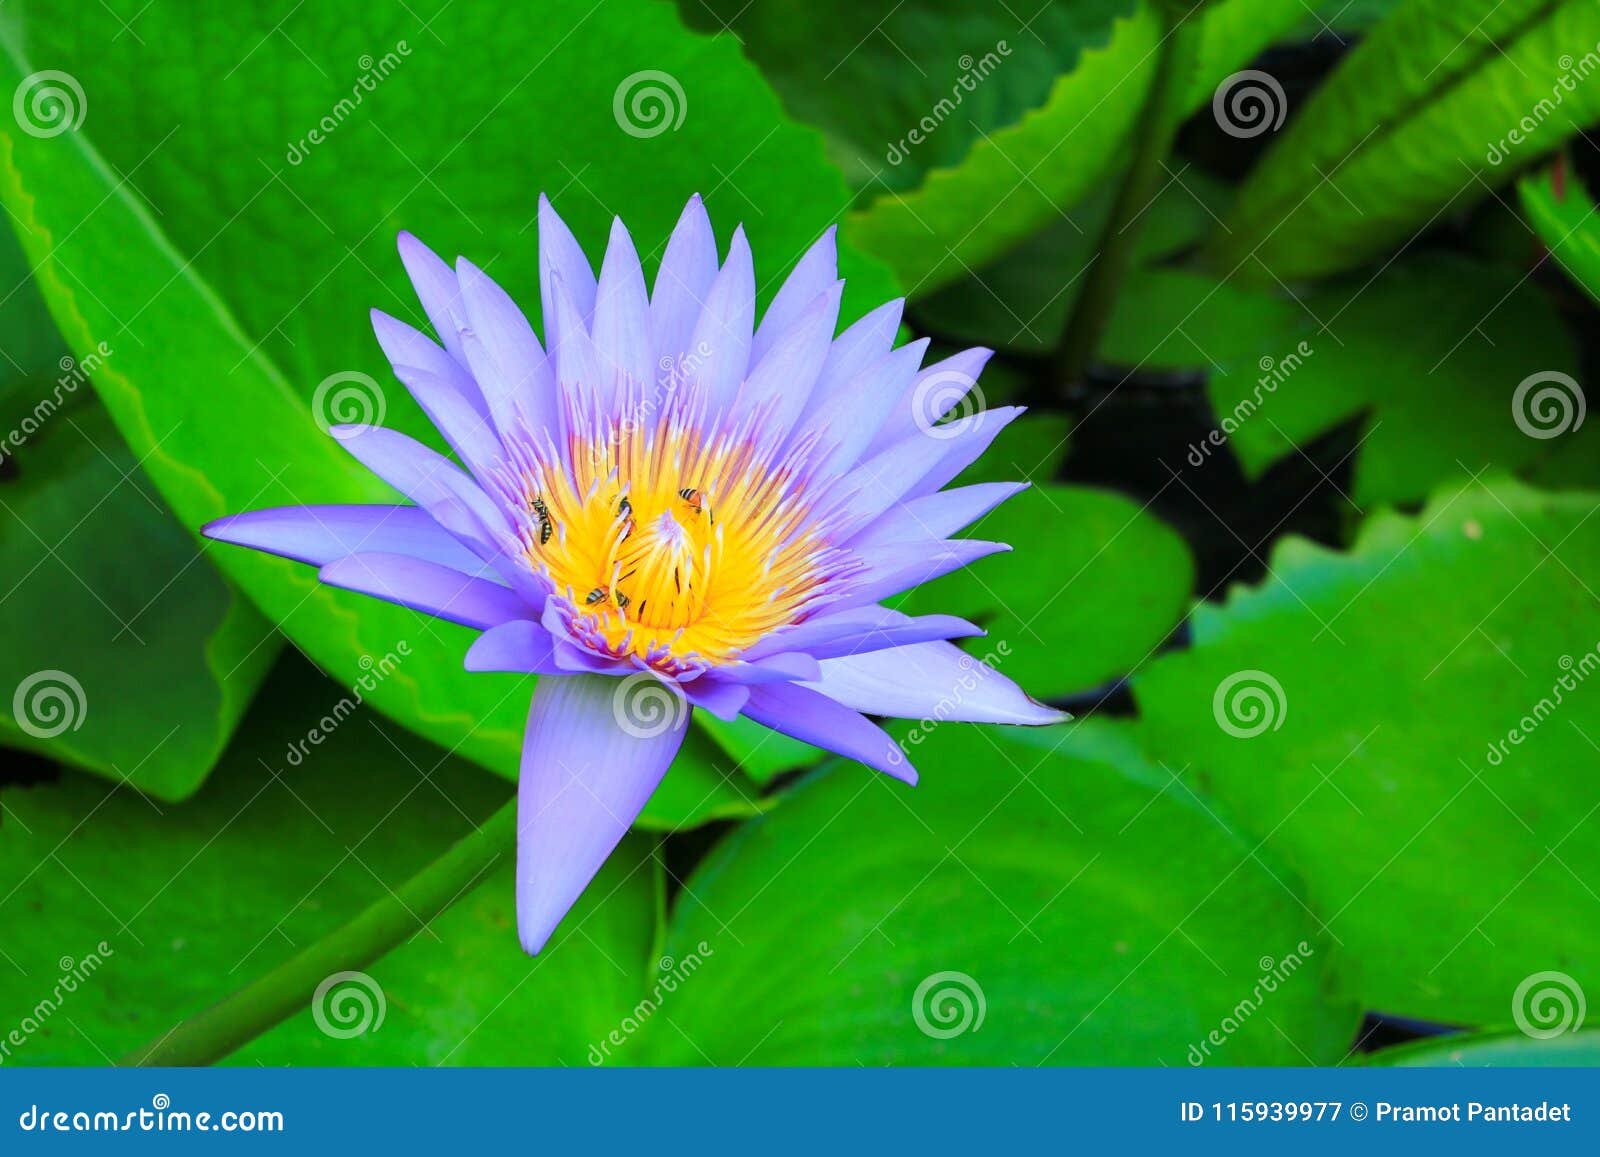 пурпур цветка лотоса или вода lilly и пчела всосали нектар в цветне закройте вверх по красивому в природе